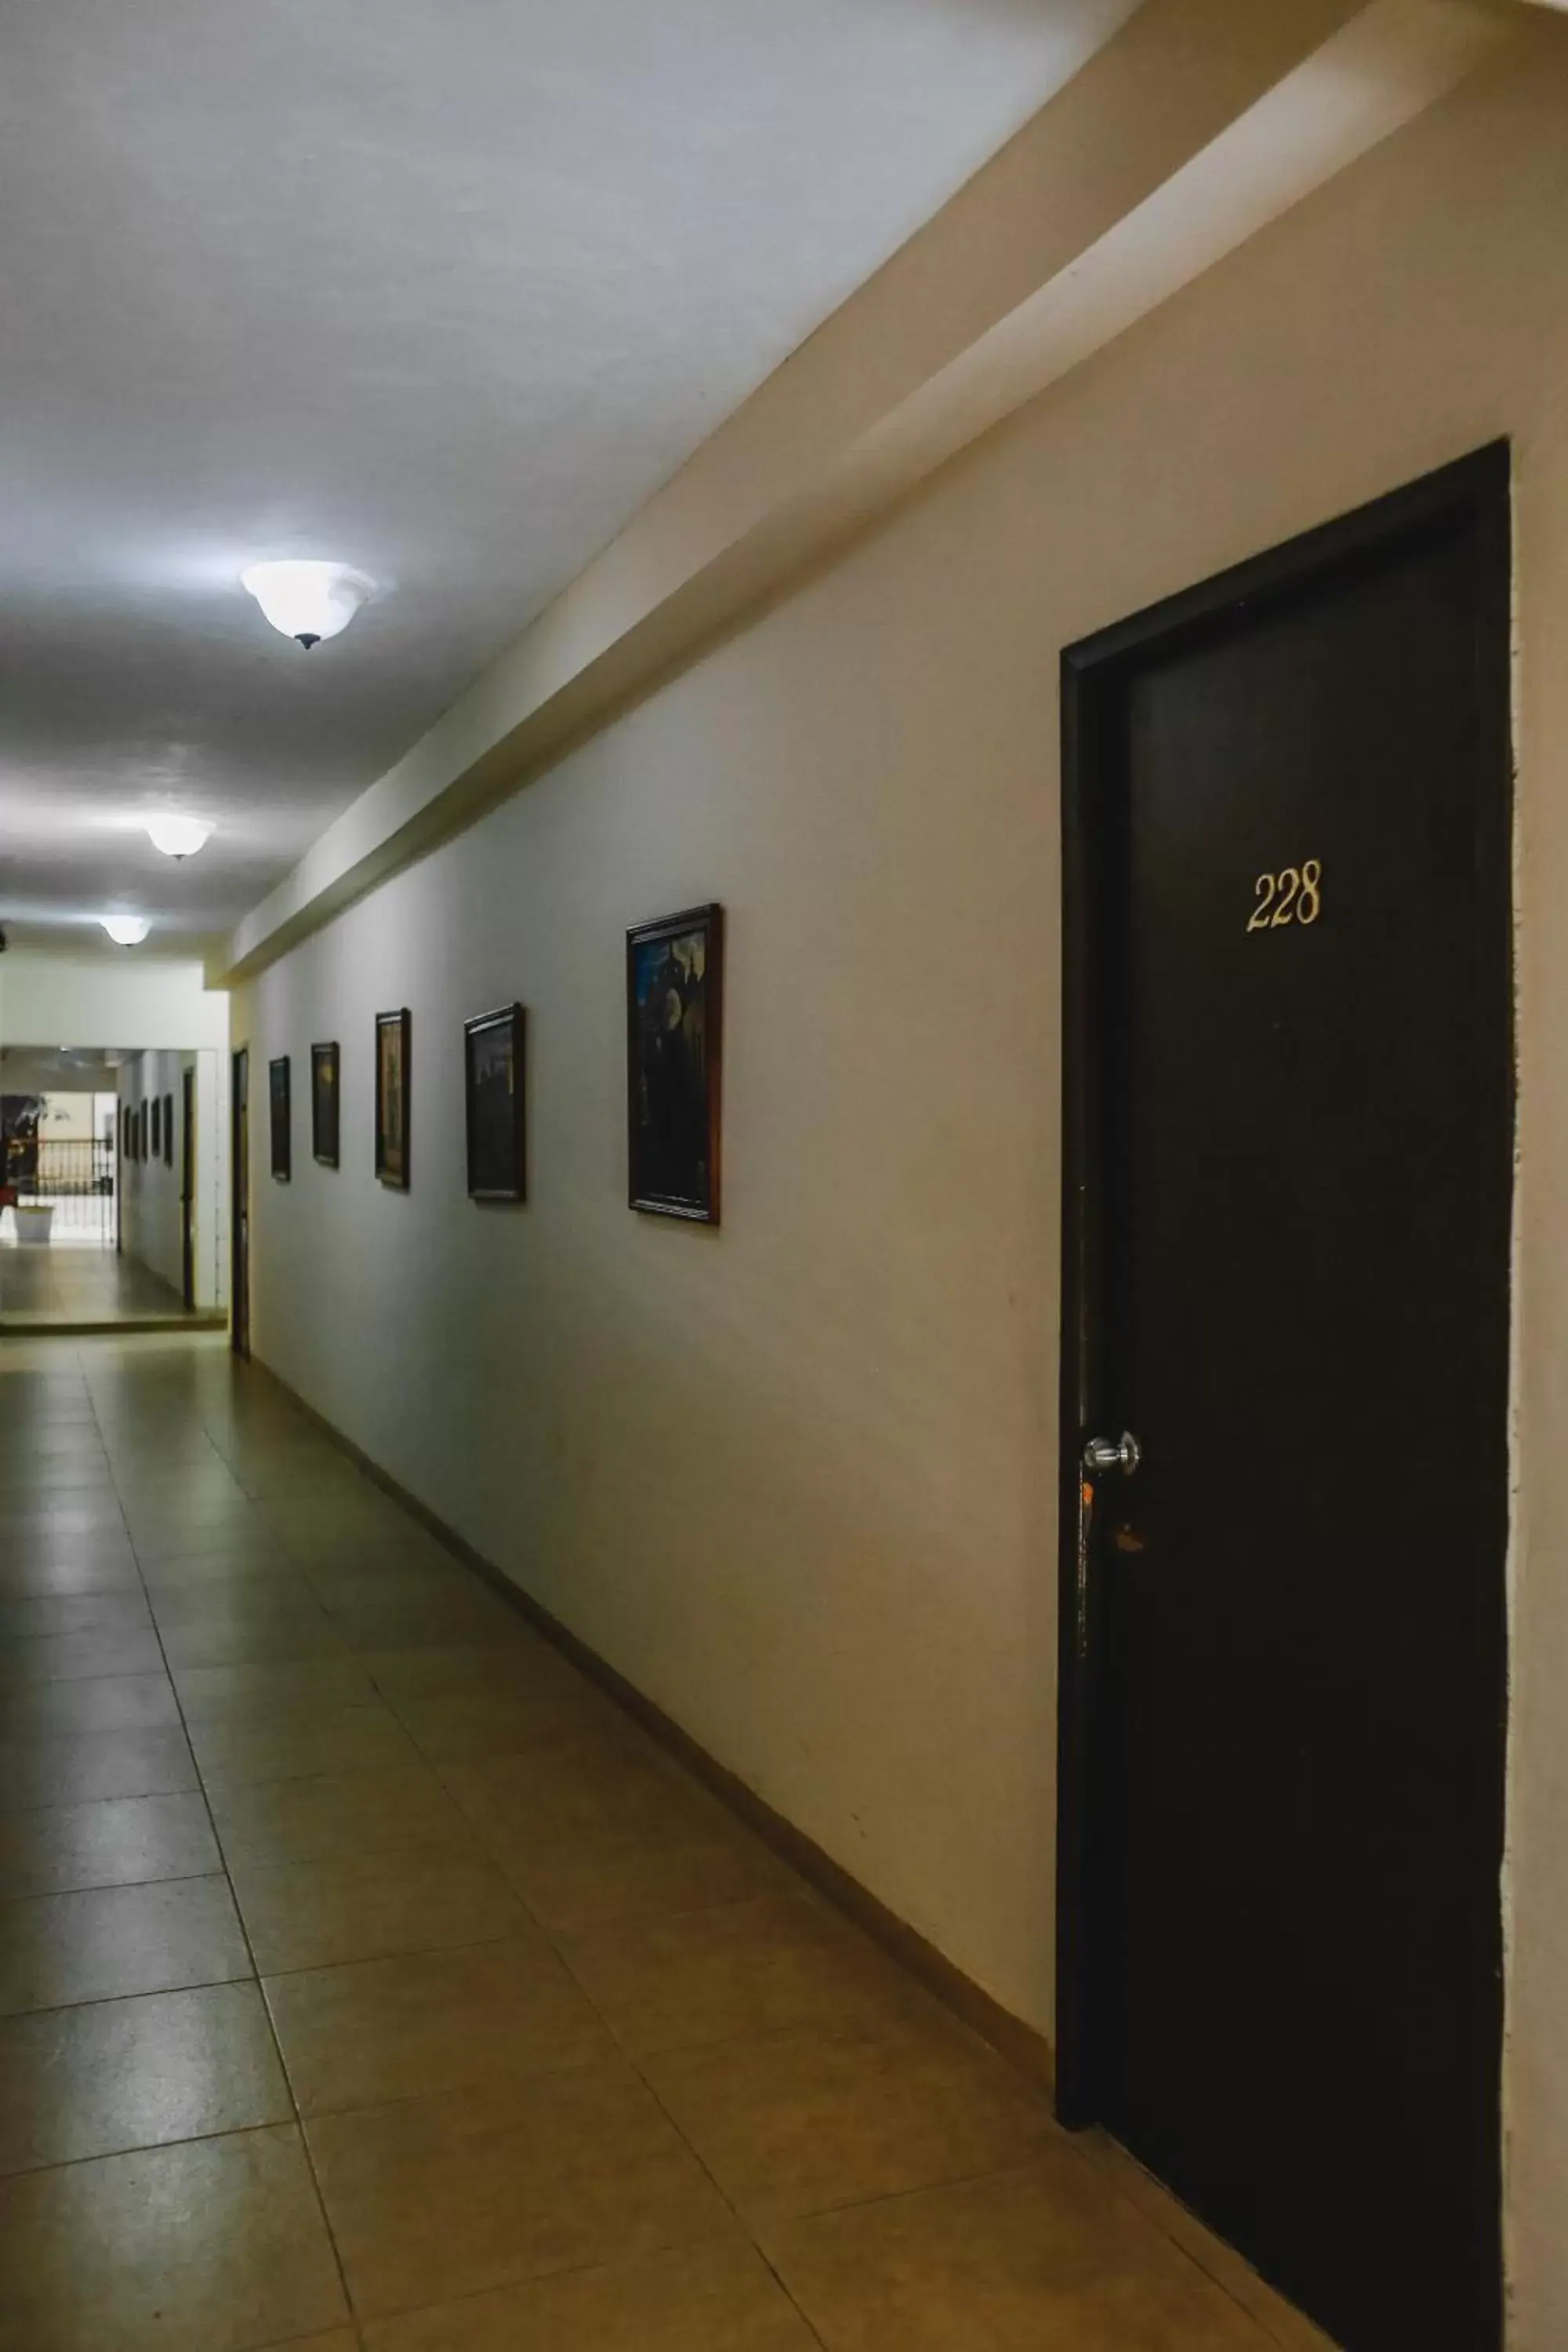 Area and facilities in Hotel Colon Merida